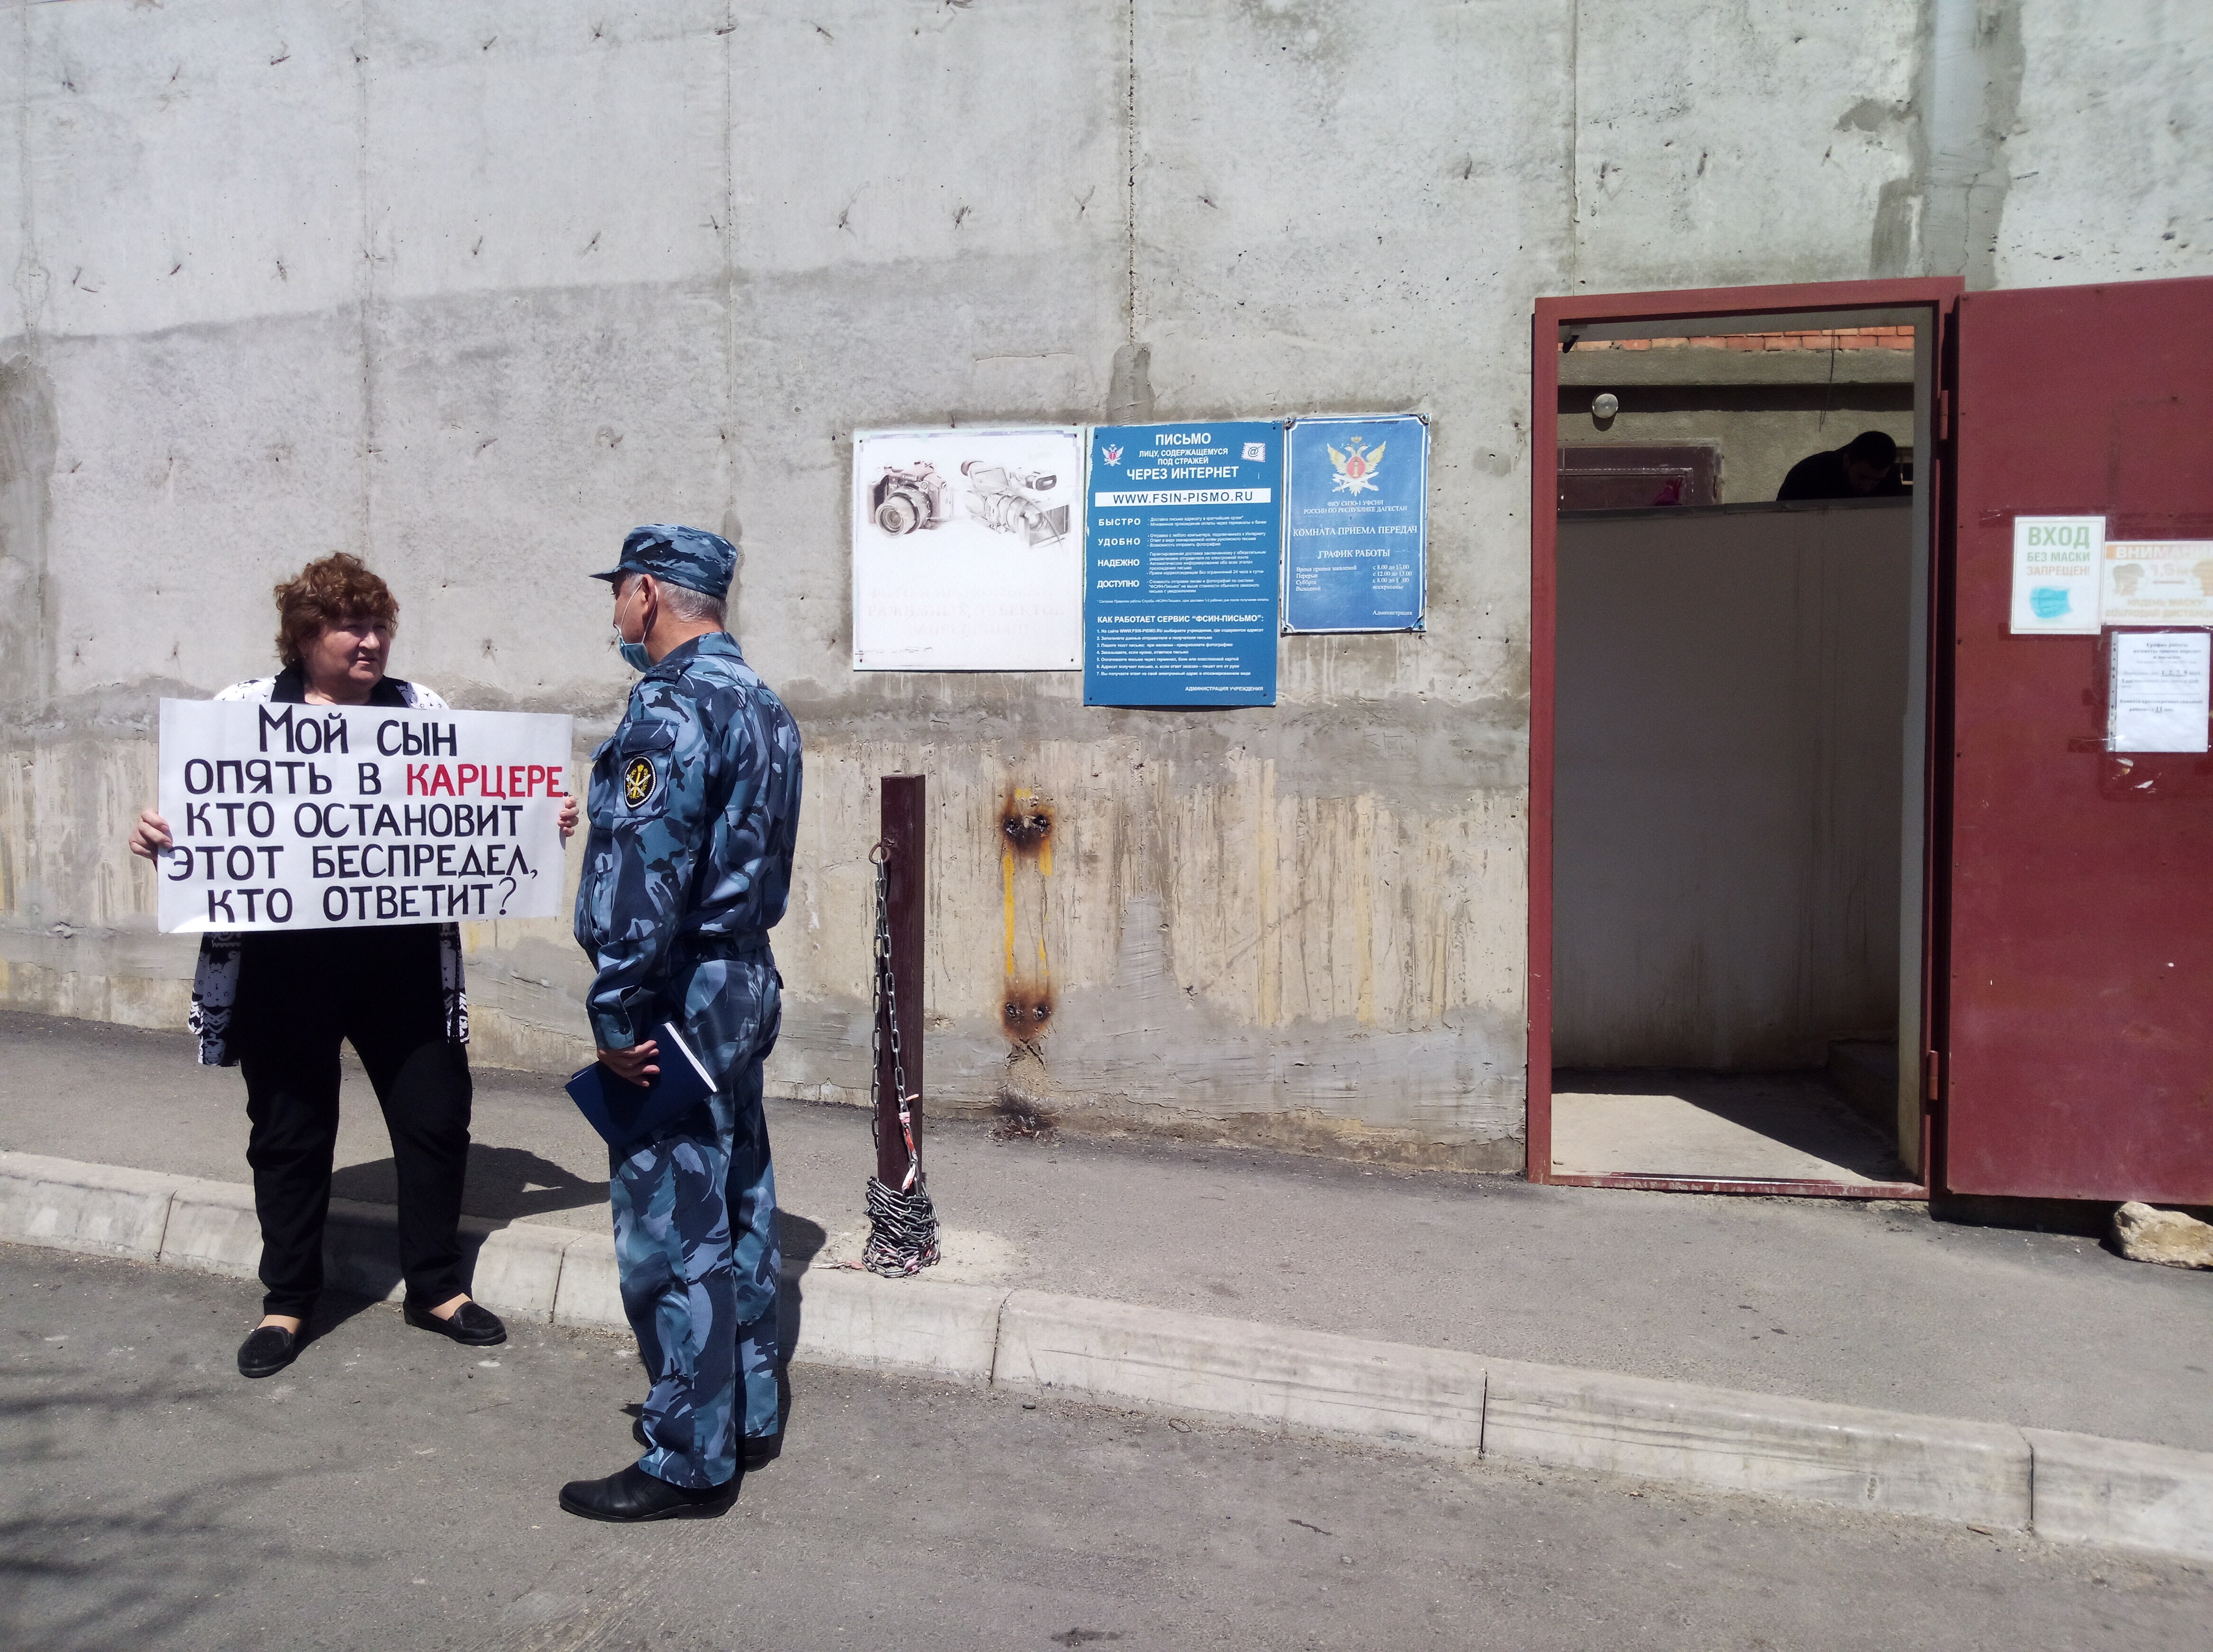 Сотрудник СИЗО подходит к Елене Барзукаевой во время пикета в Махачкале 8 мая 2021 года. Фото Расула Магомедова для "Кавказского узла"